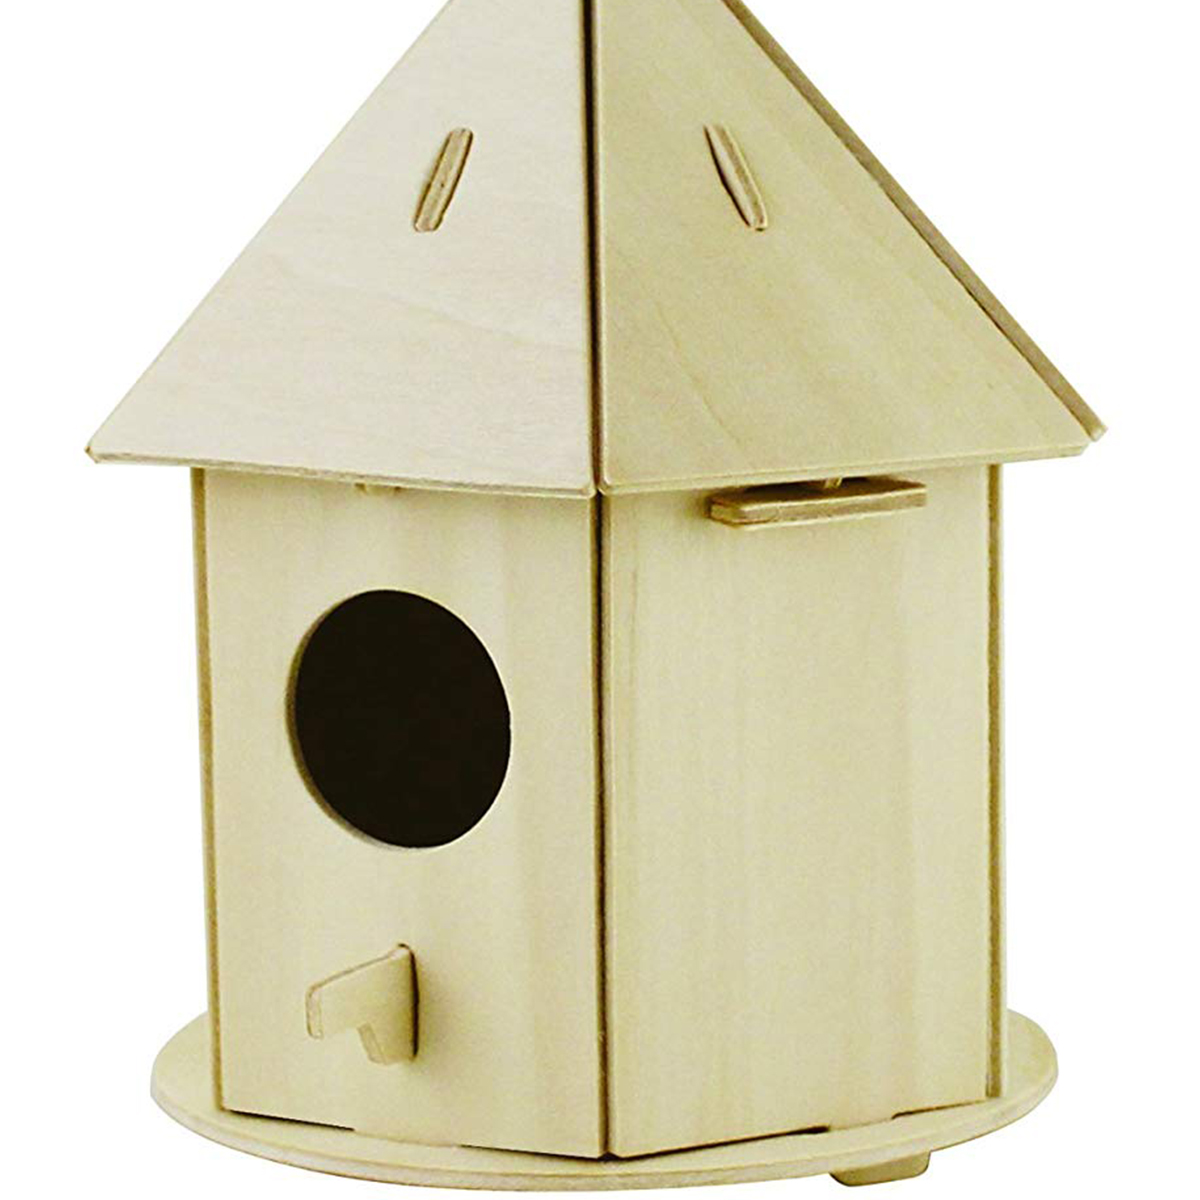 Top 10: Cute Bird Boxes | Garden Power Tools